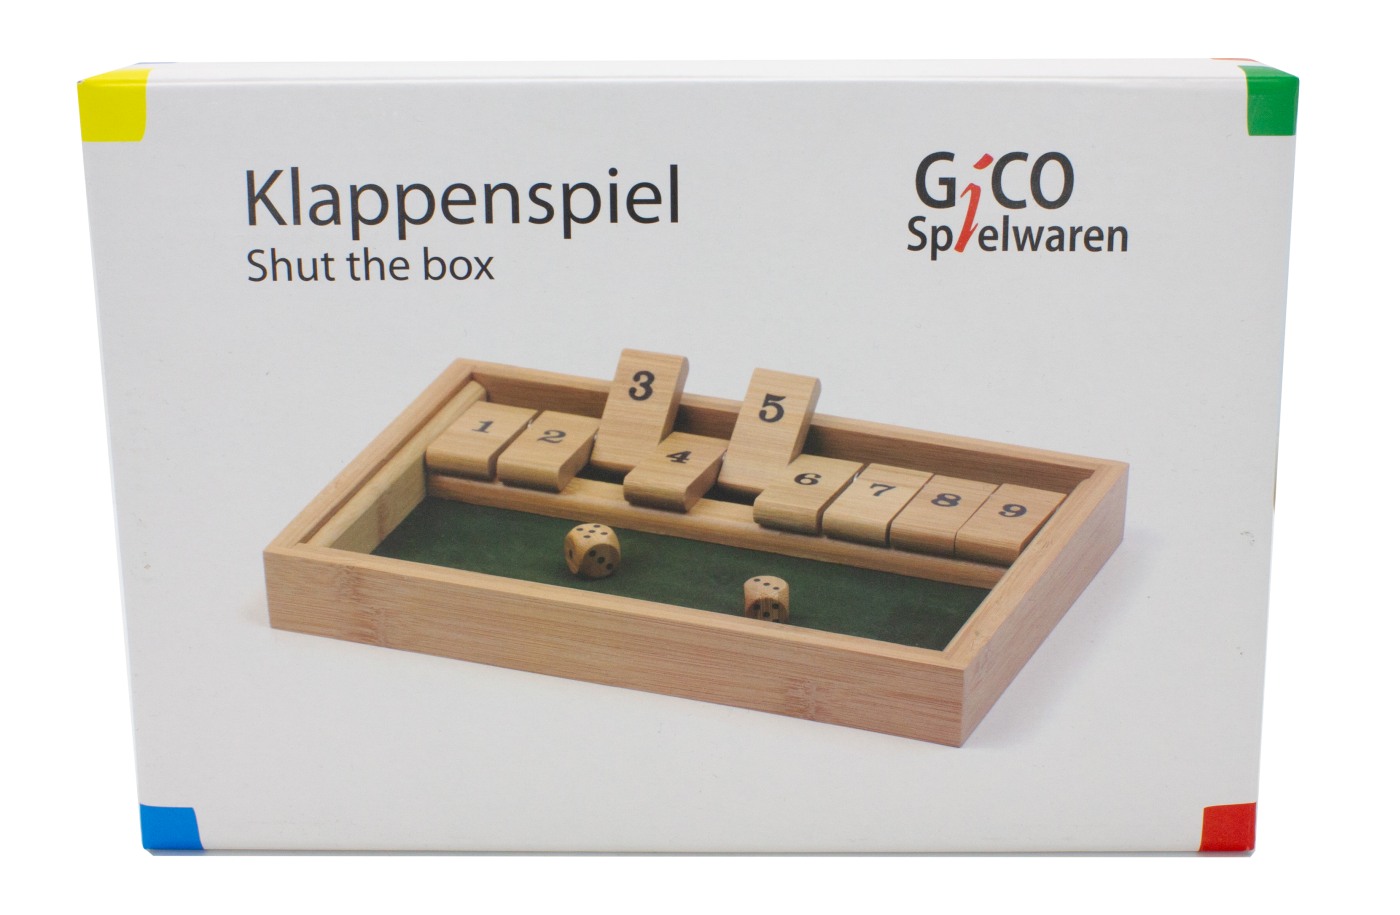 GICO Klappenspiel / Shut the box aus Holz. Das bekannte Gesellschaftsspiel für Jung und Alt 7954